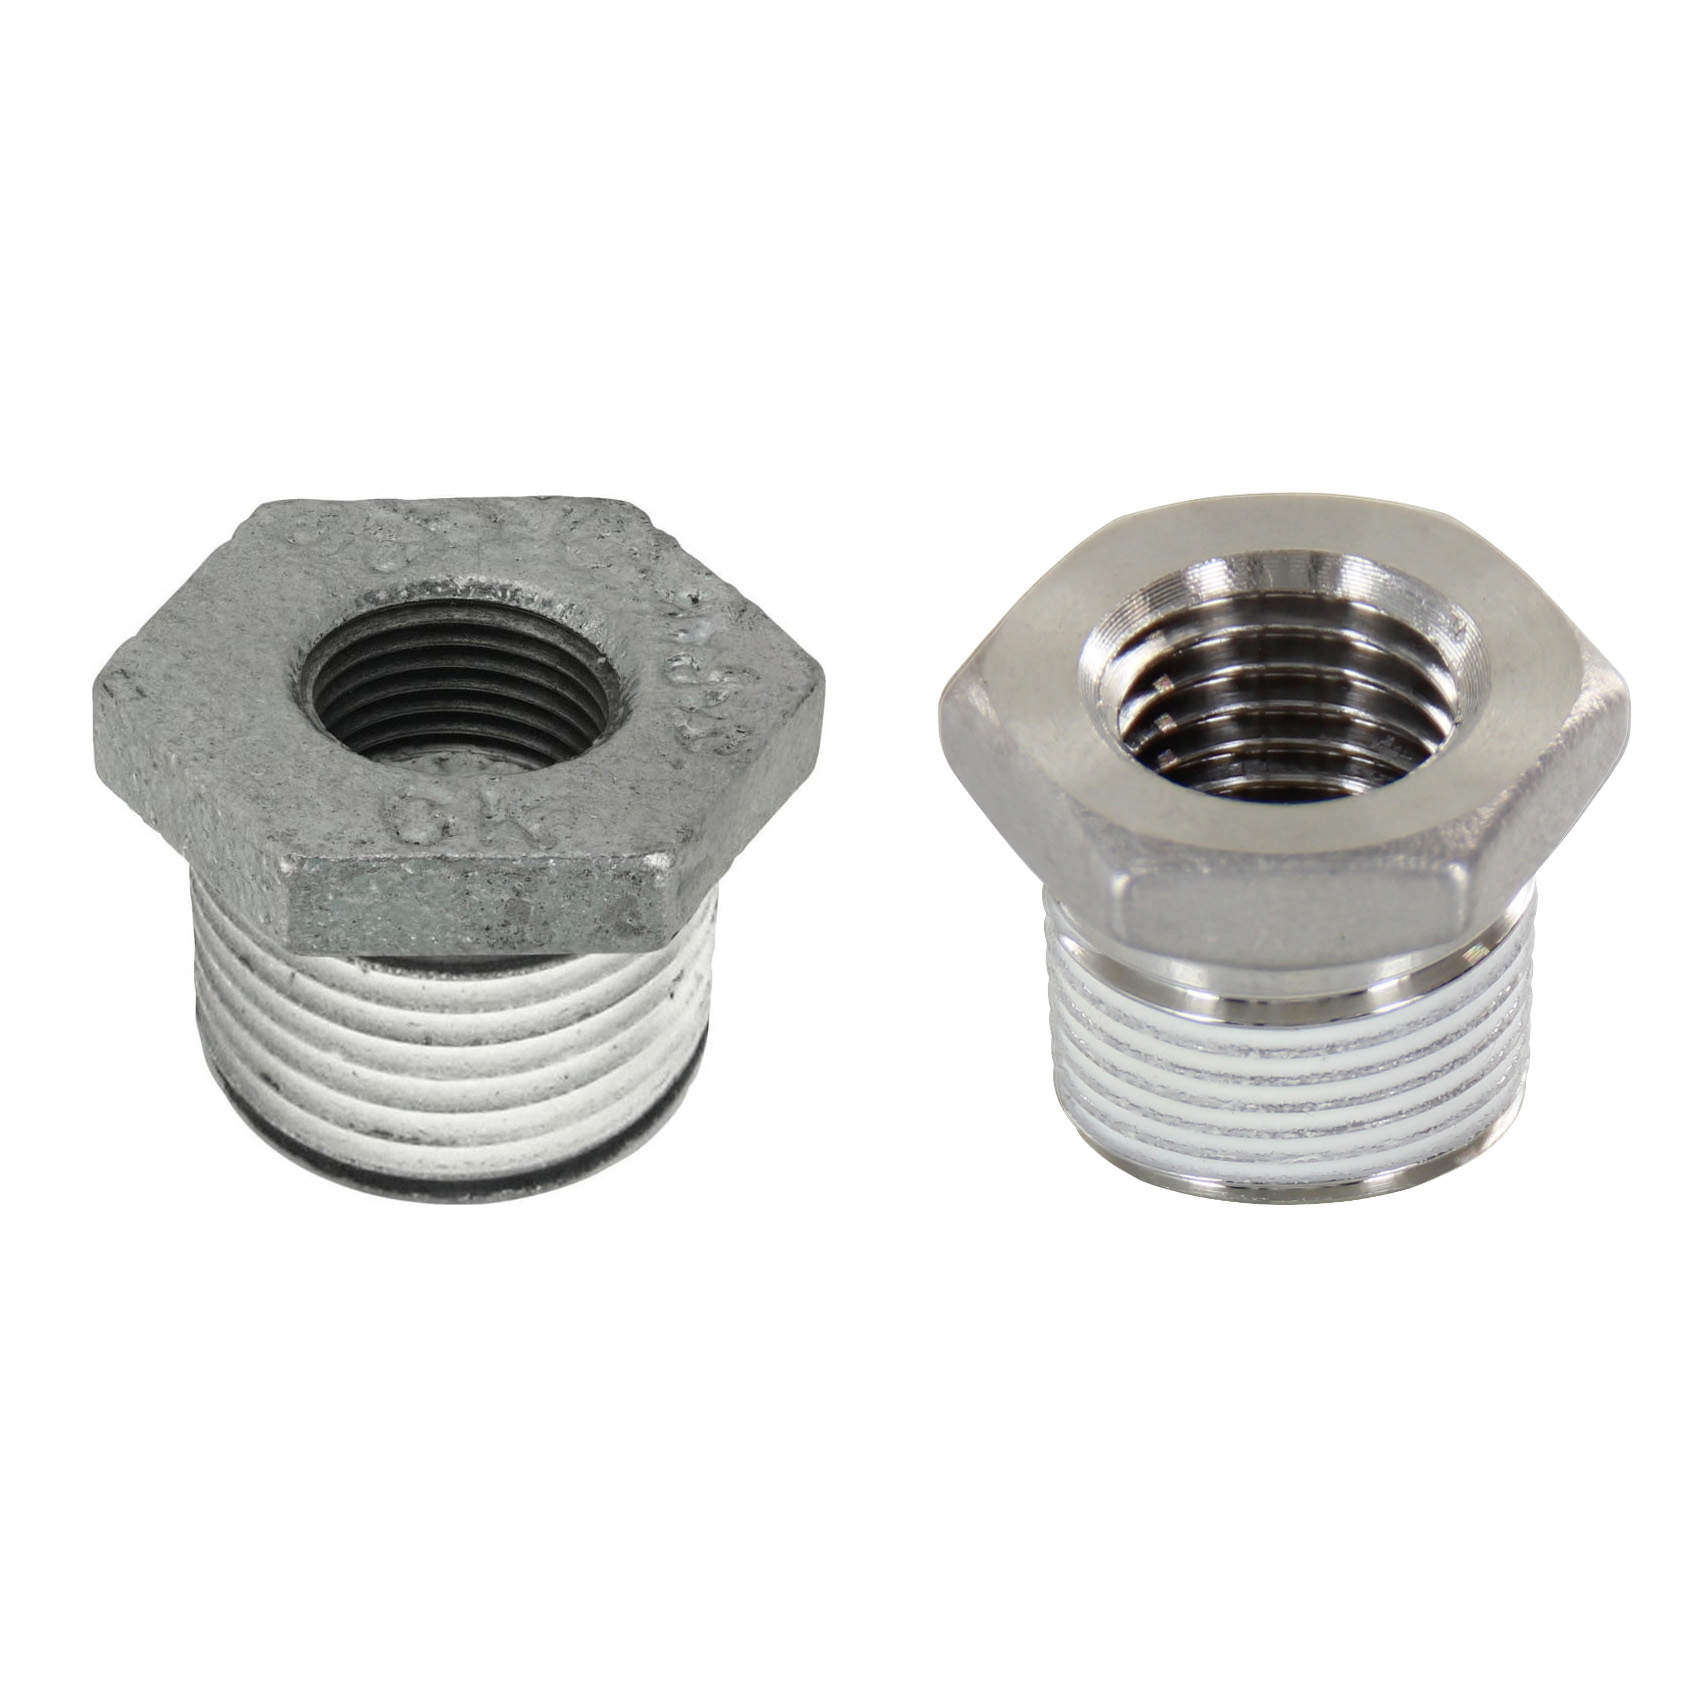 Low Pressure Screw Fittings - Thread Coated Type - Steel Pipe Fittings - Bushings SGCPB12